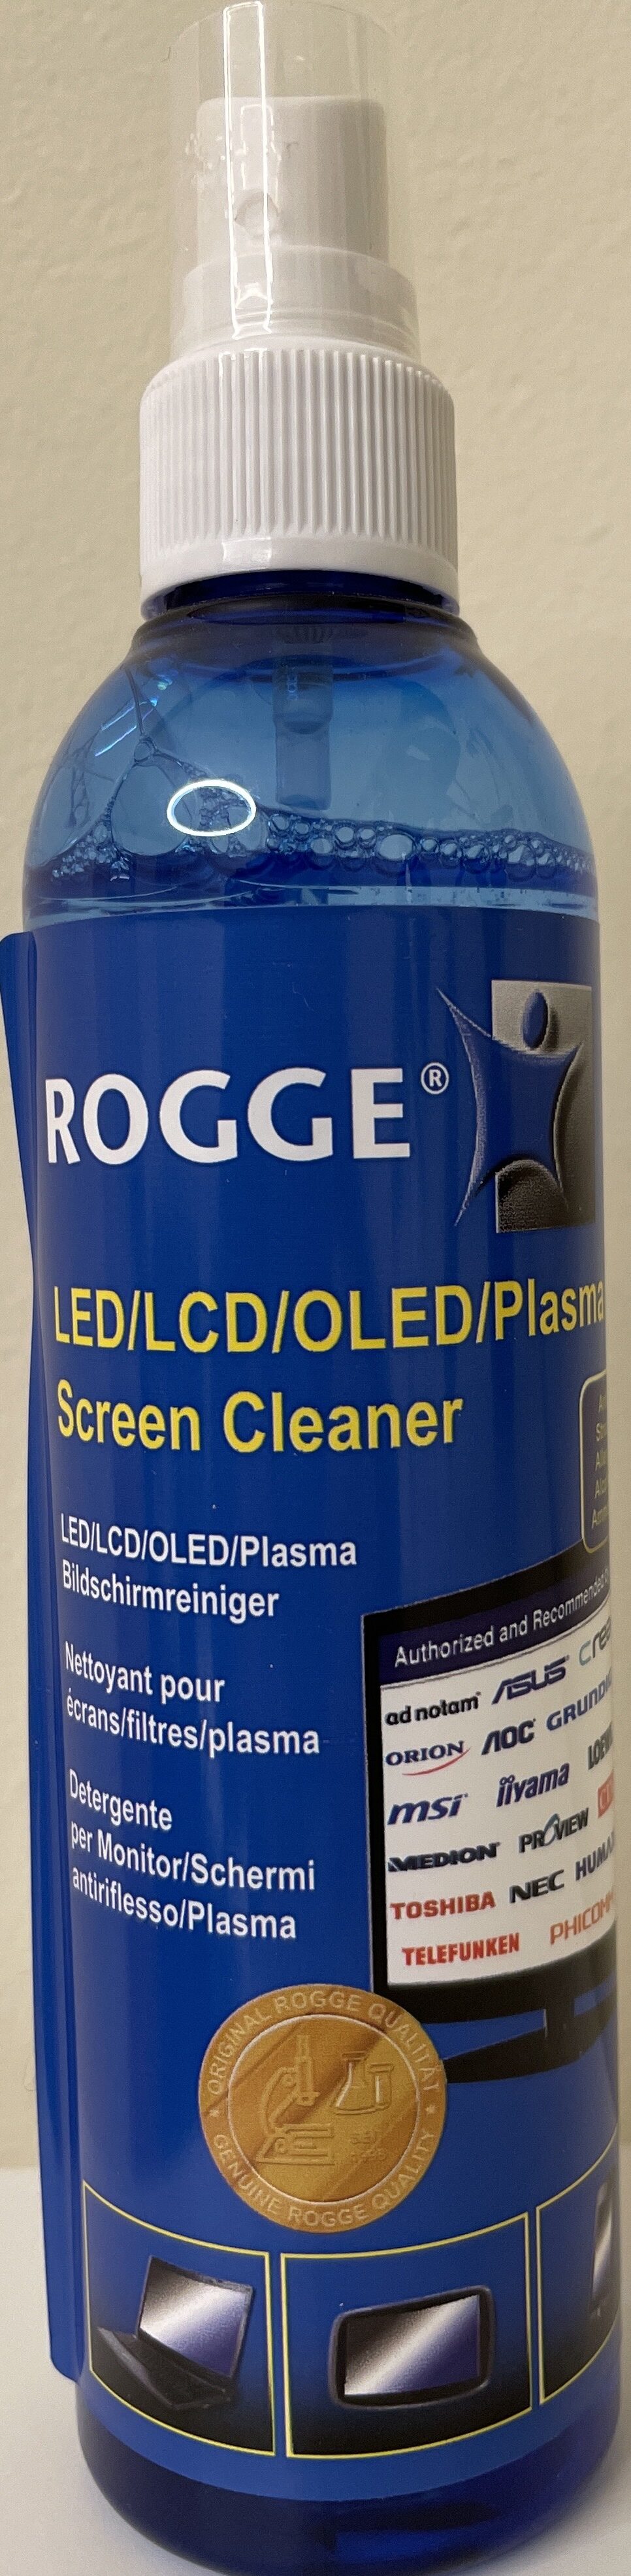 Screen Cleaner - Product - de